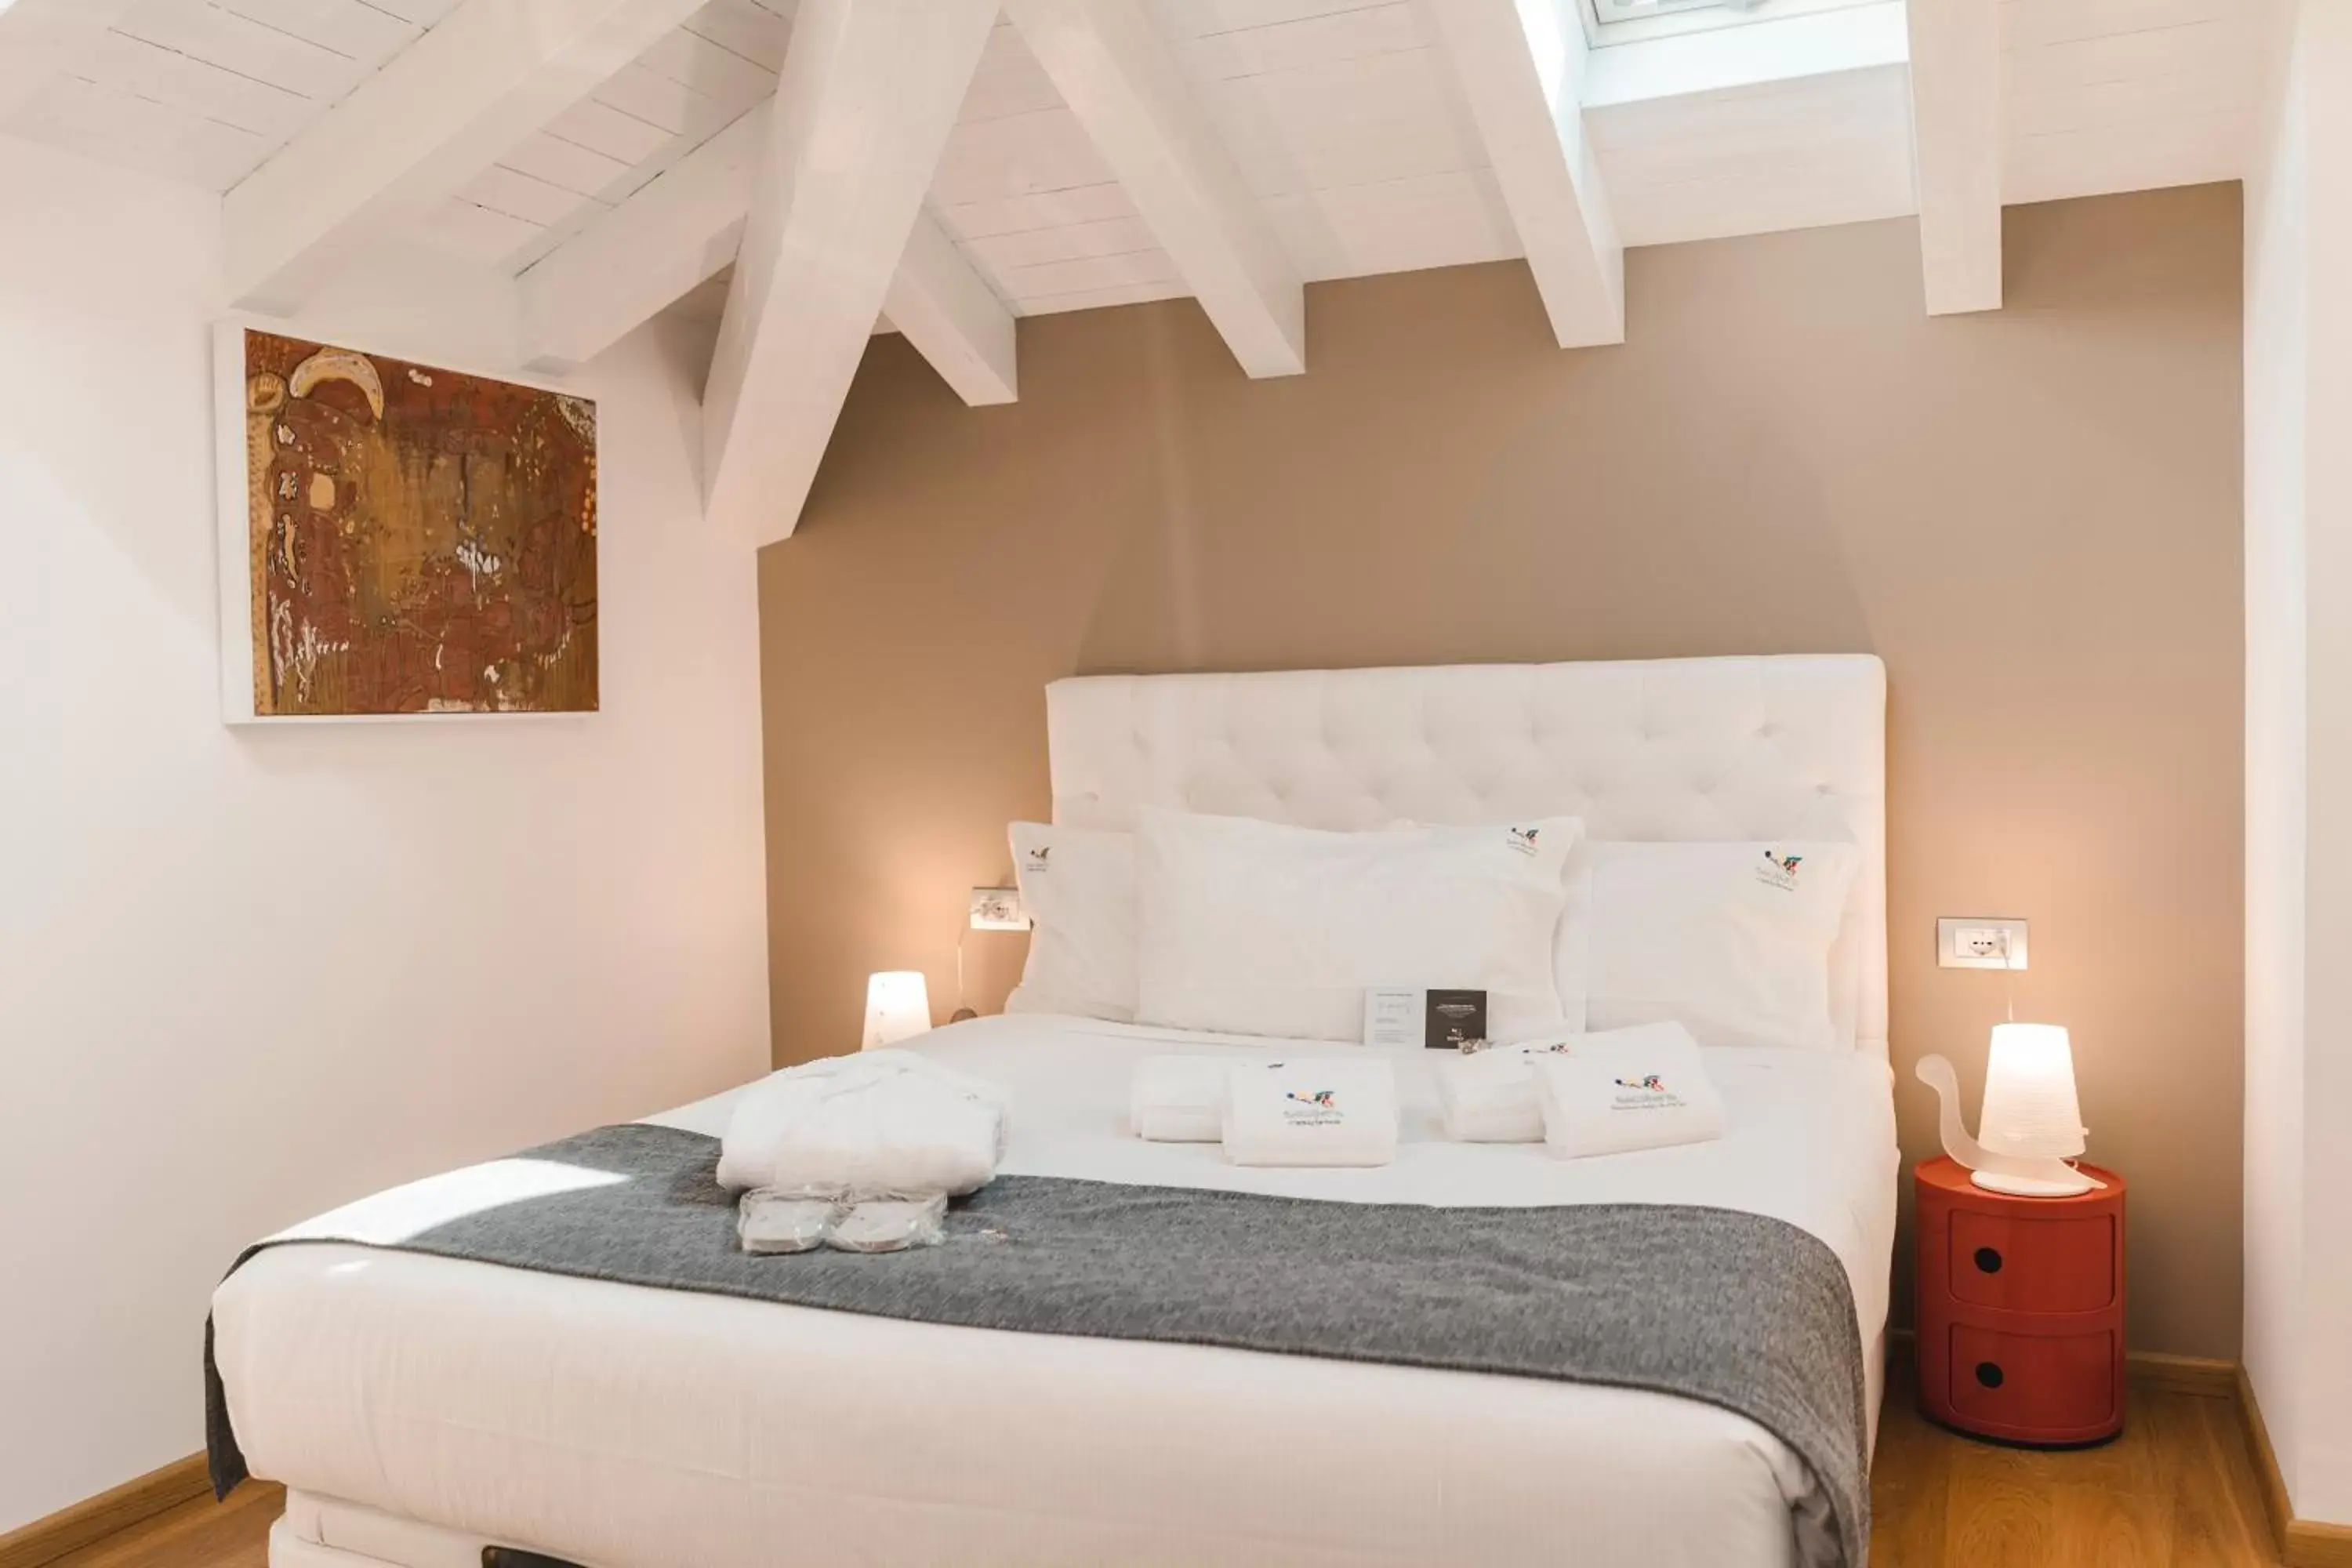 Bed, Room Photo in Sicilia's Art Hotel & Spa